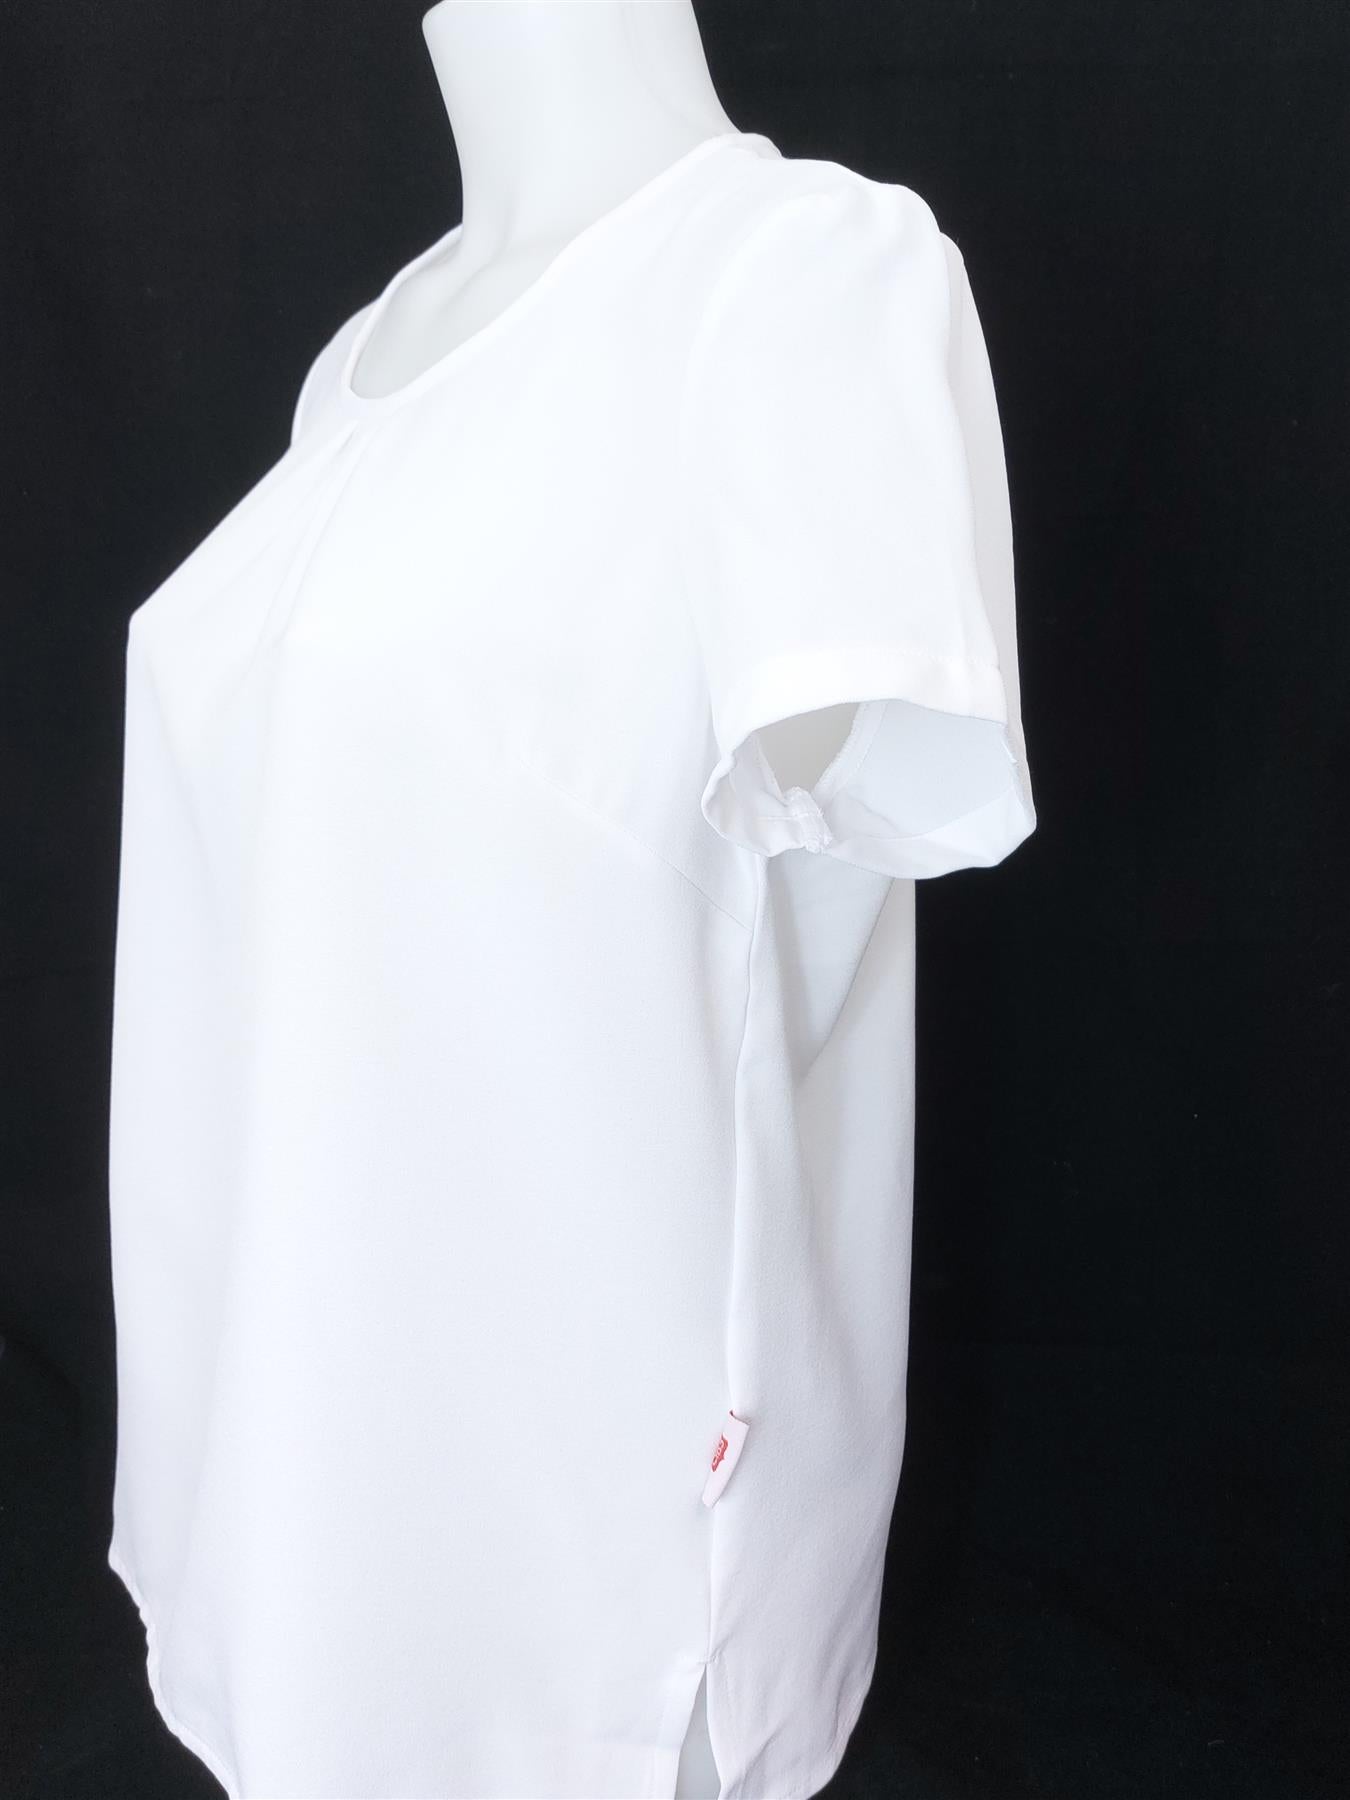 Women's Work Blouse 2-Pack Short Sleeve Smart Easy Care Office Shirt Top White